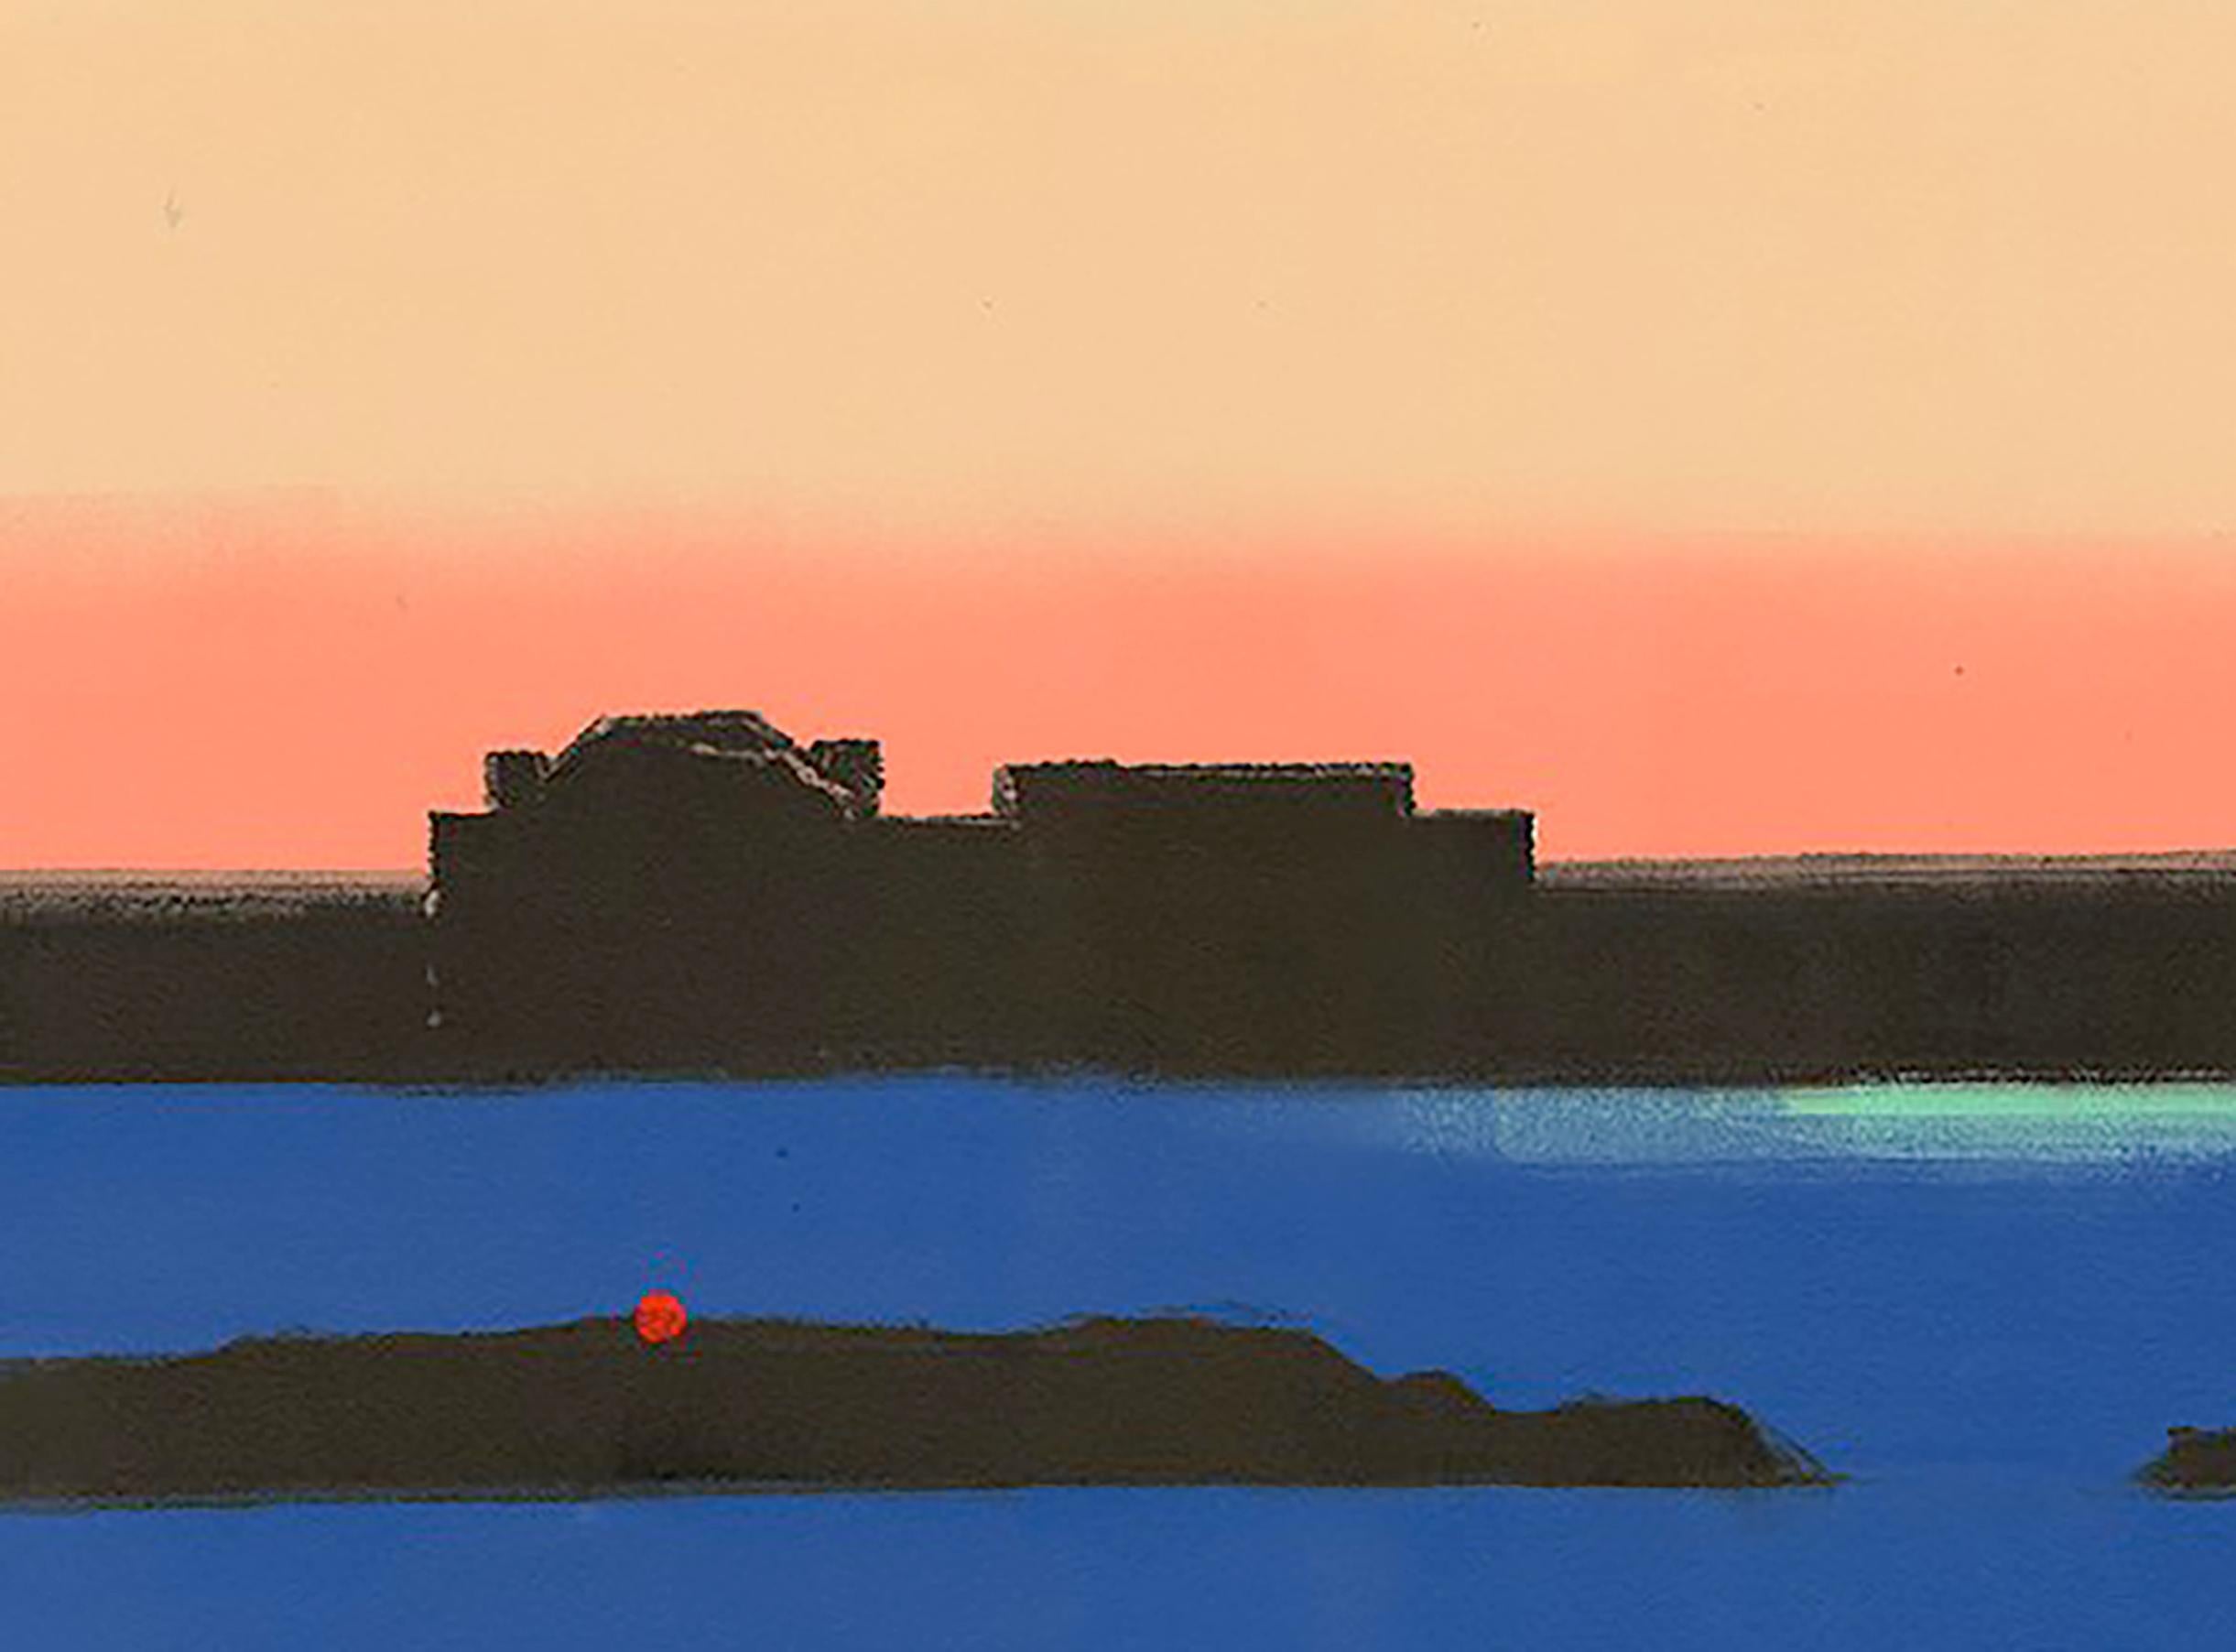 Rotes Licht, Landschaft, Meereslandschaft, rot, blau, grün, gelb, dunkle Farben, Triptychon (Zeitgenössisch), Print, von Rachel Burgess